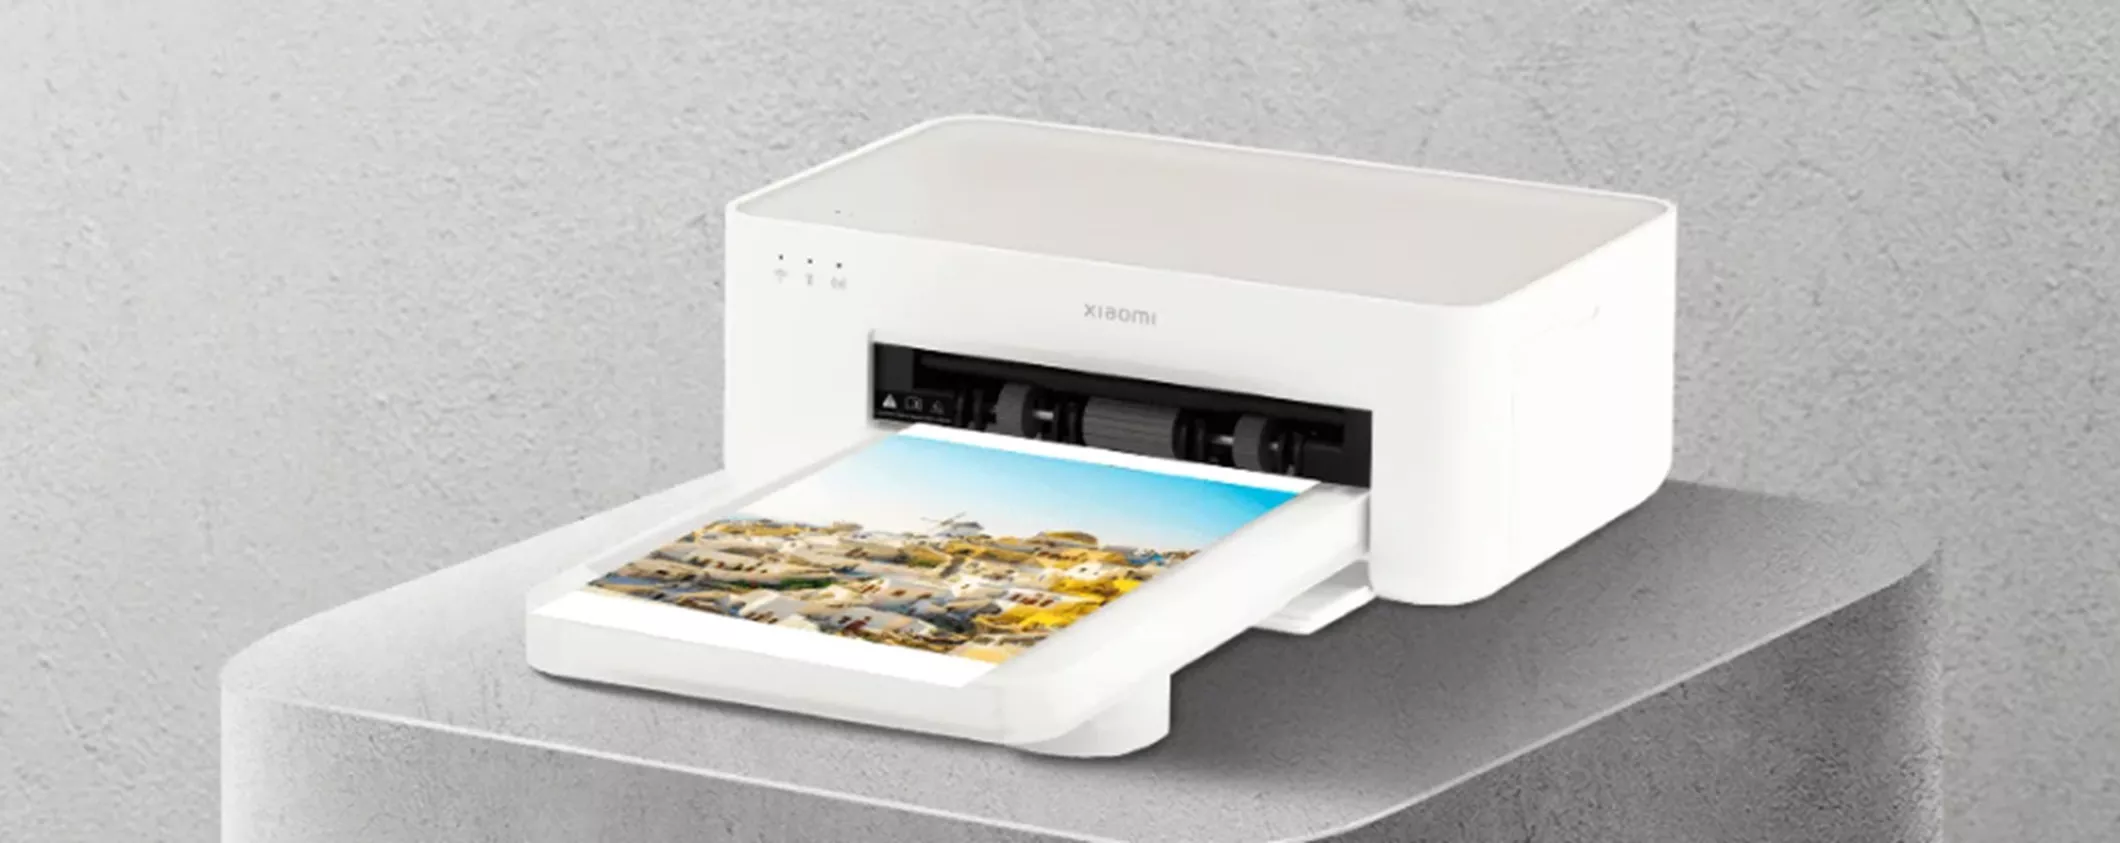 La stampante fotografica di Xiaomi è un GIOIELLINO: su Amazon in super offerta a 84,99€